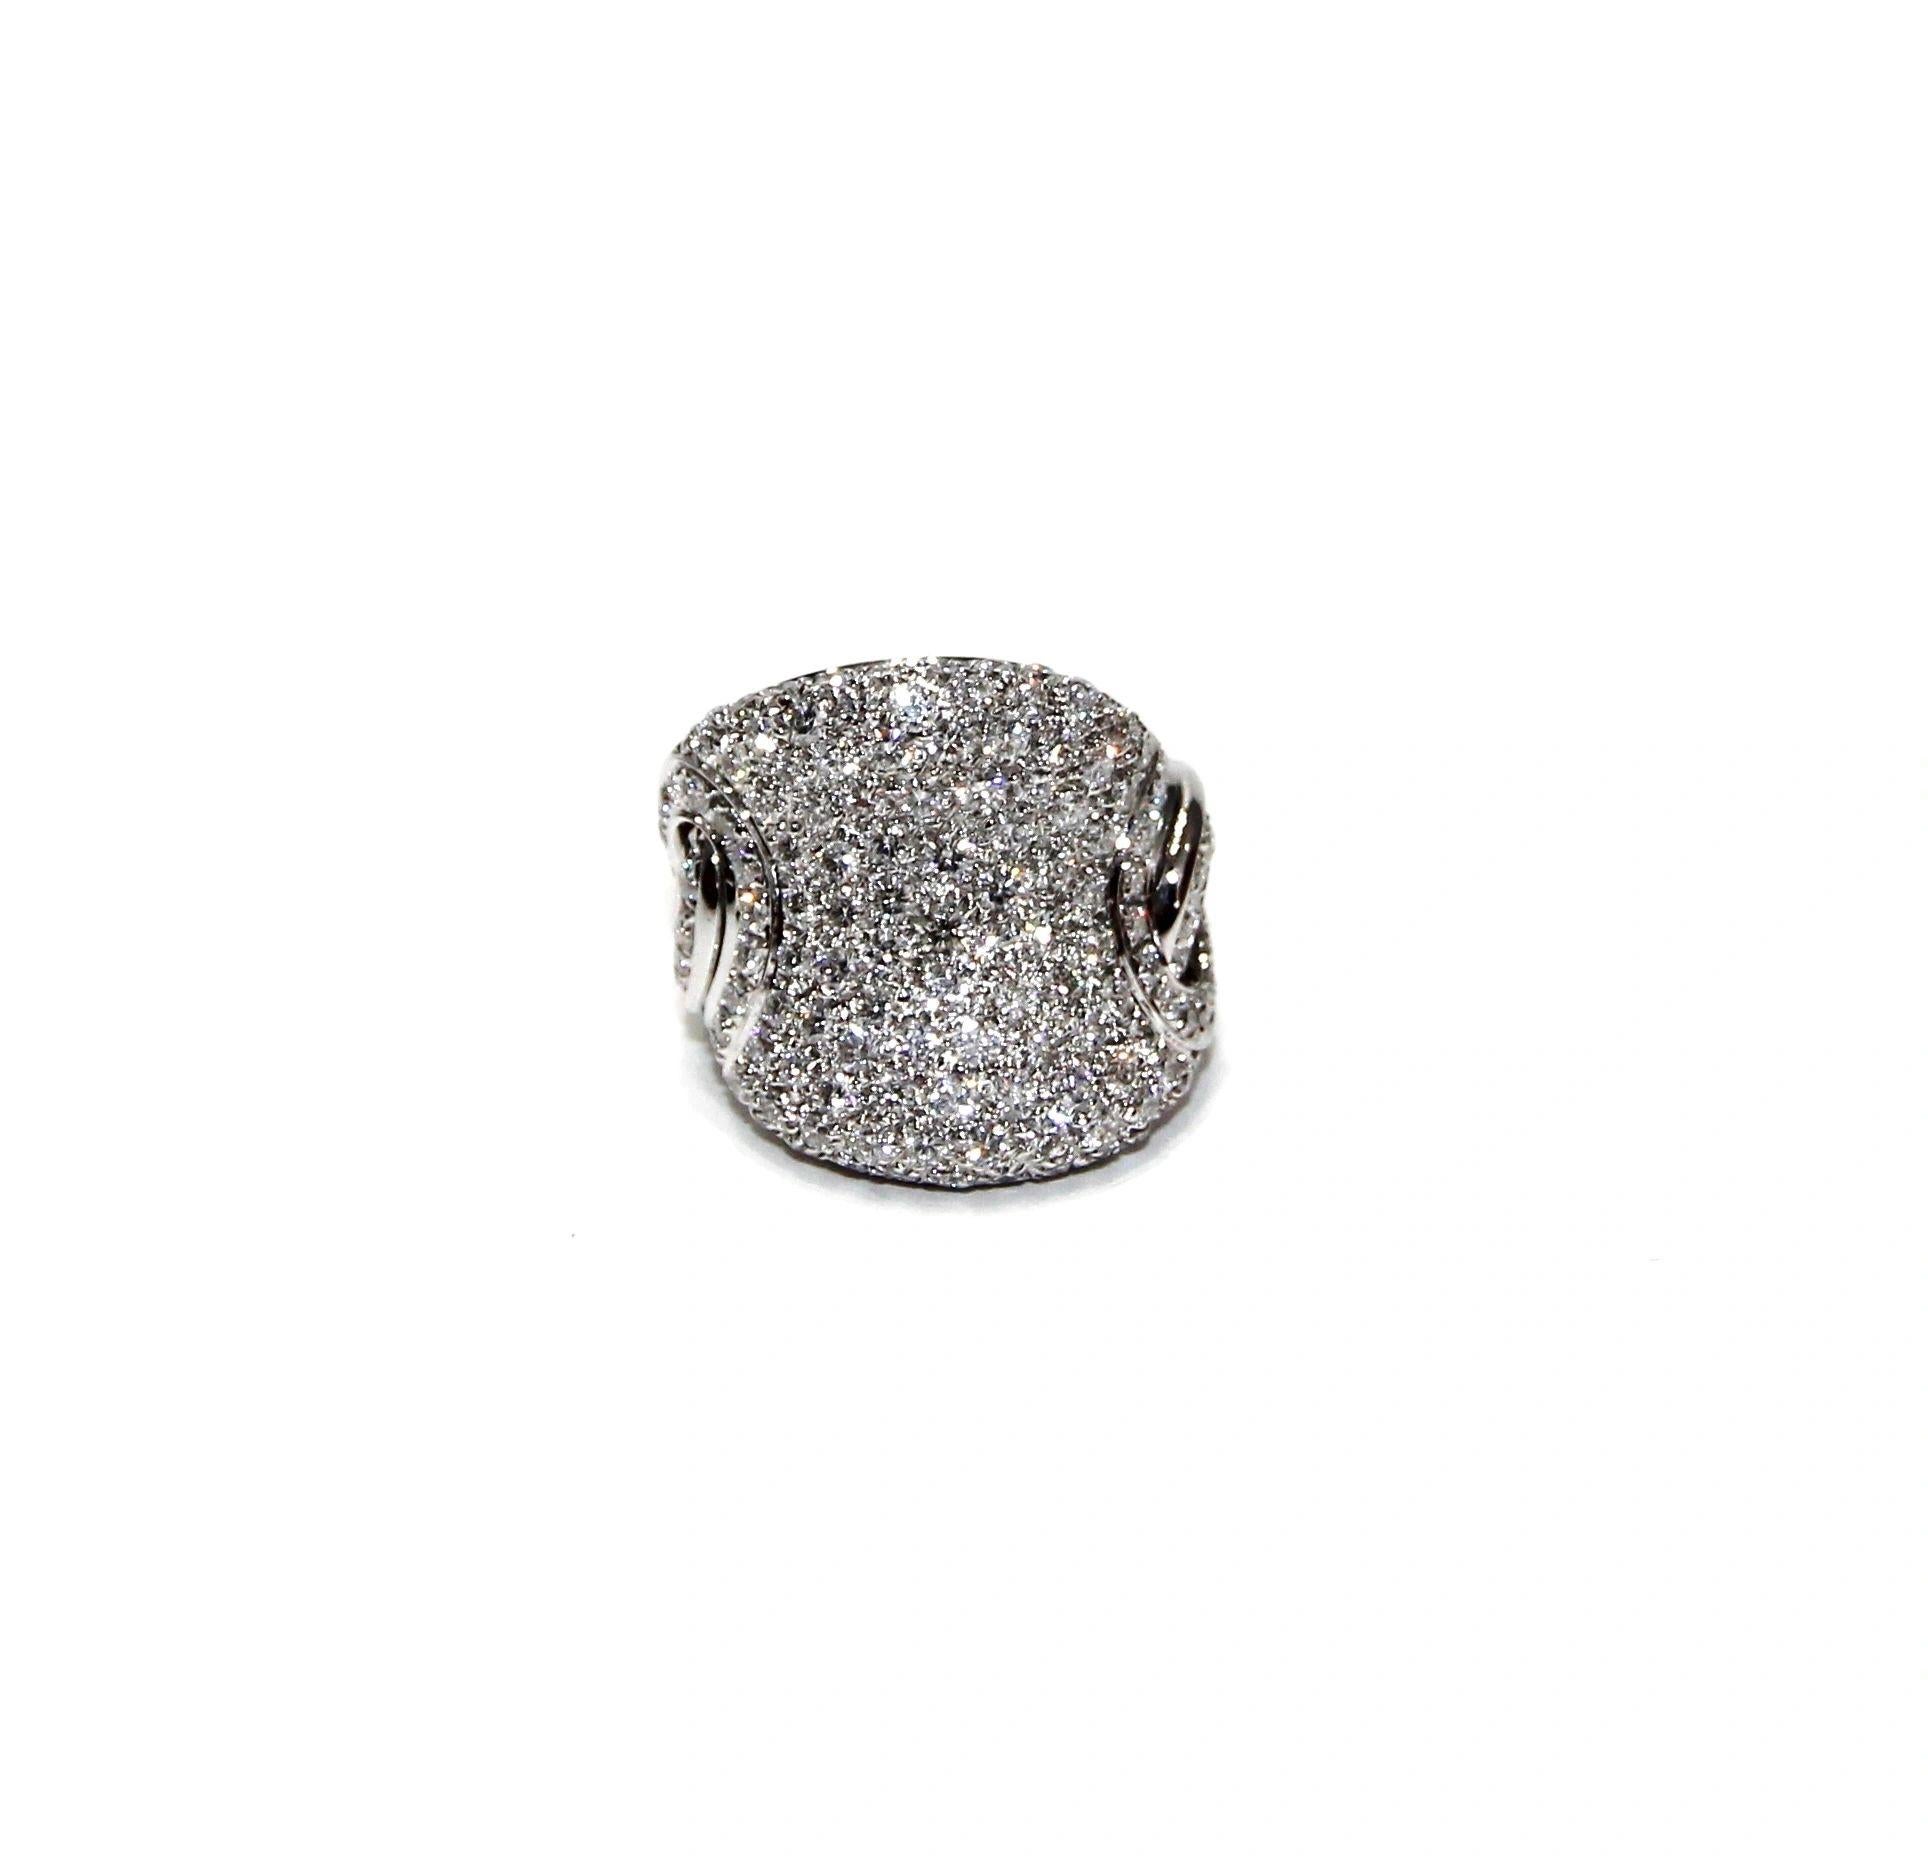 Leo Pizzo 18K White Gold Diamond Pave Ring
Diamond: 3.04ctw
Color: G-H
Clarity: VS1/VS2
Ring size: 6
SKU: LPO01327
Retail price: $17,695.00